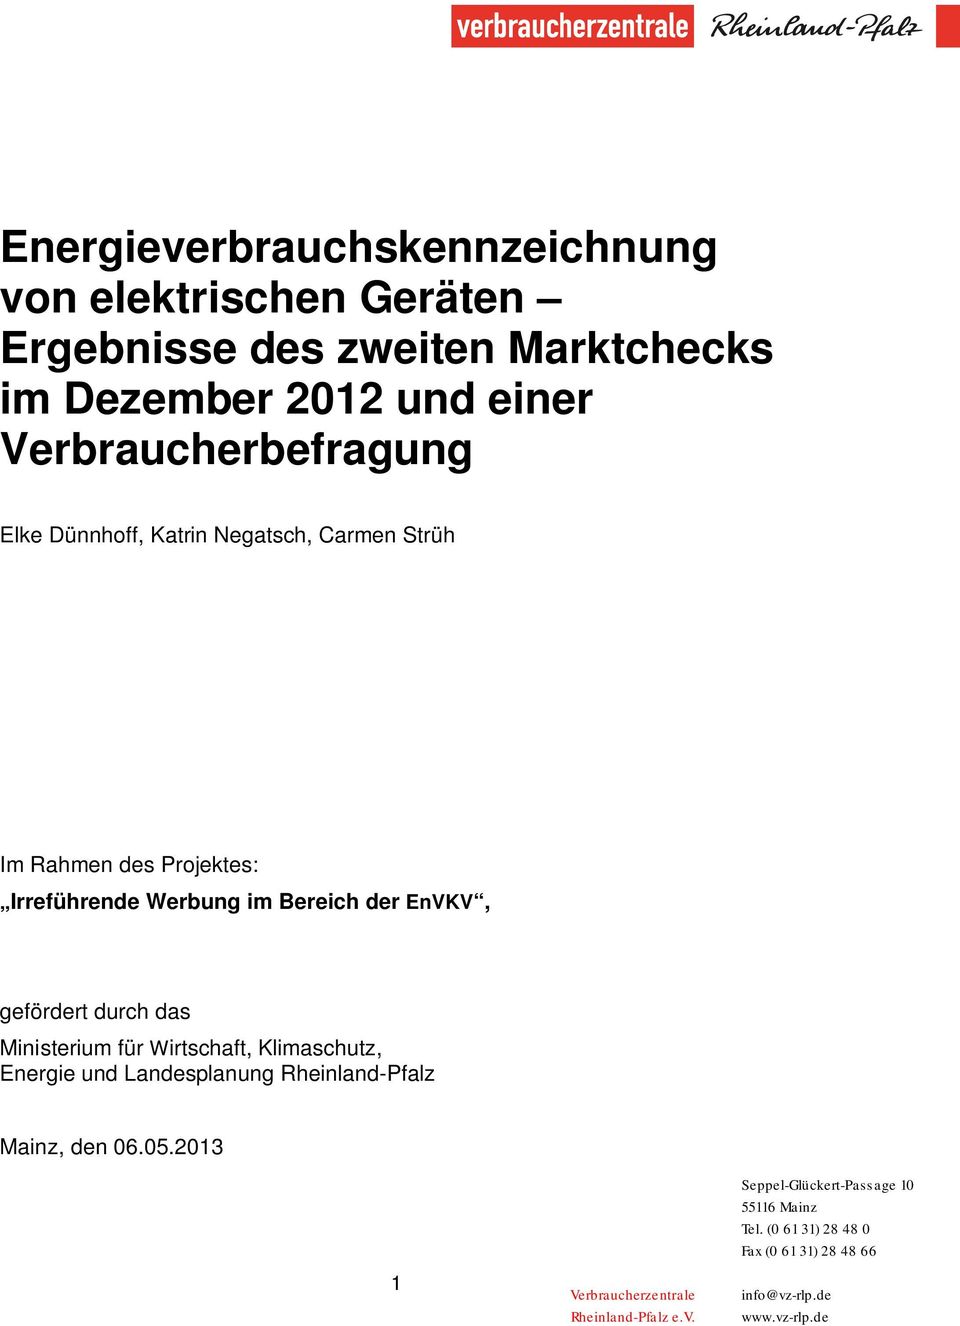 gefördert durch das Ministerium für Wirtschaft, Klimaschutz, Energie und Landesplanung Rheinland-Pfalz Mainz, den 06.05.